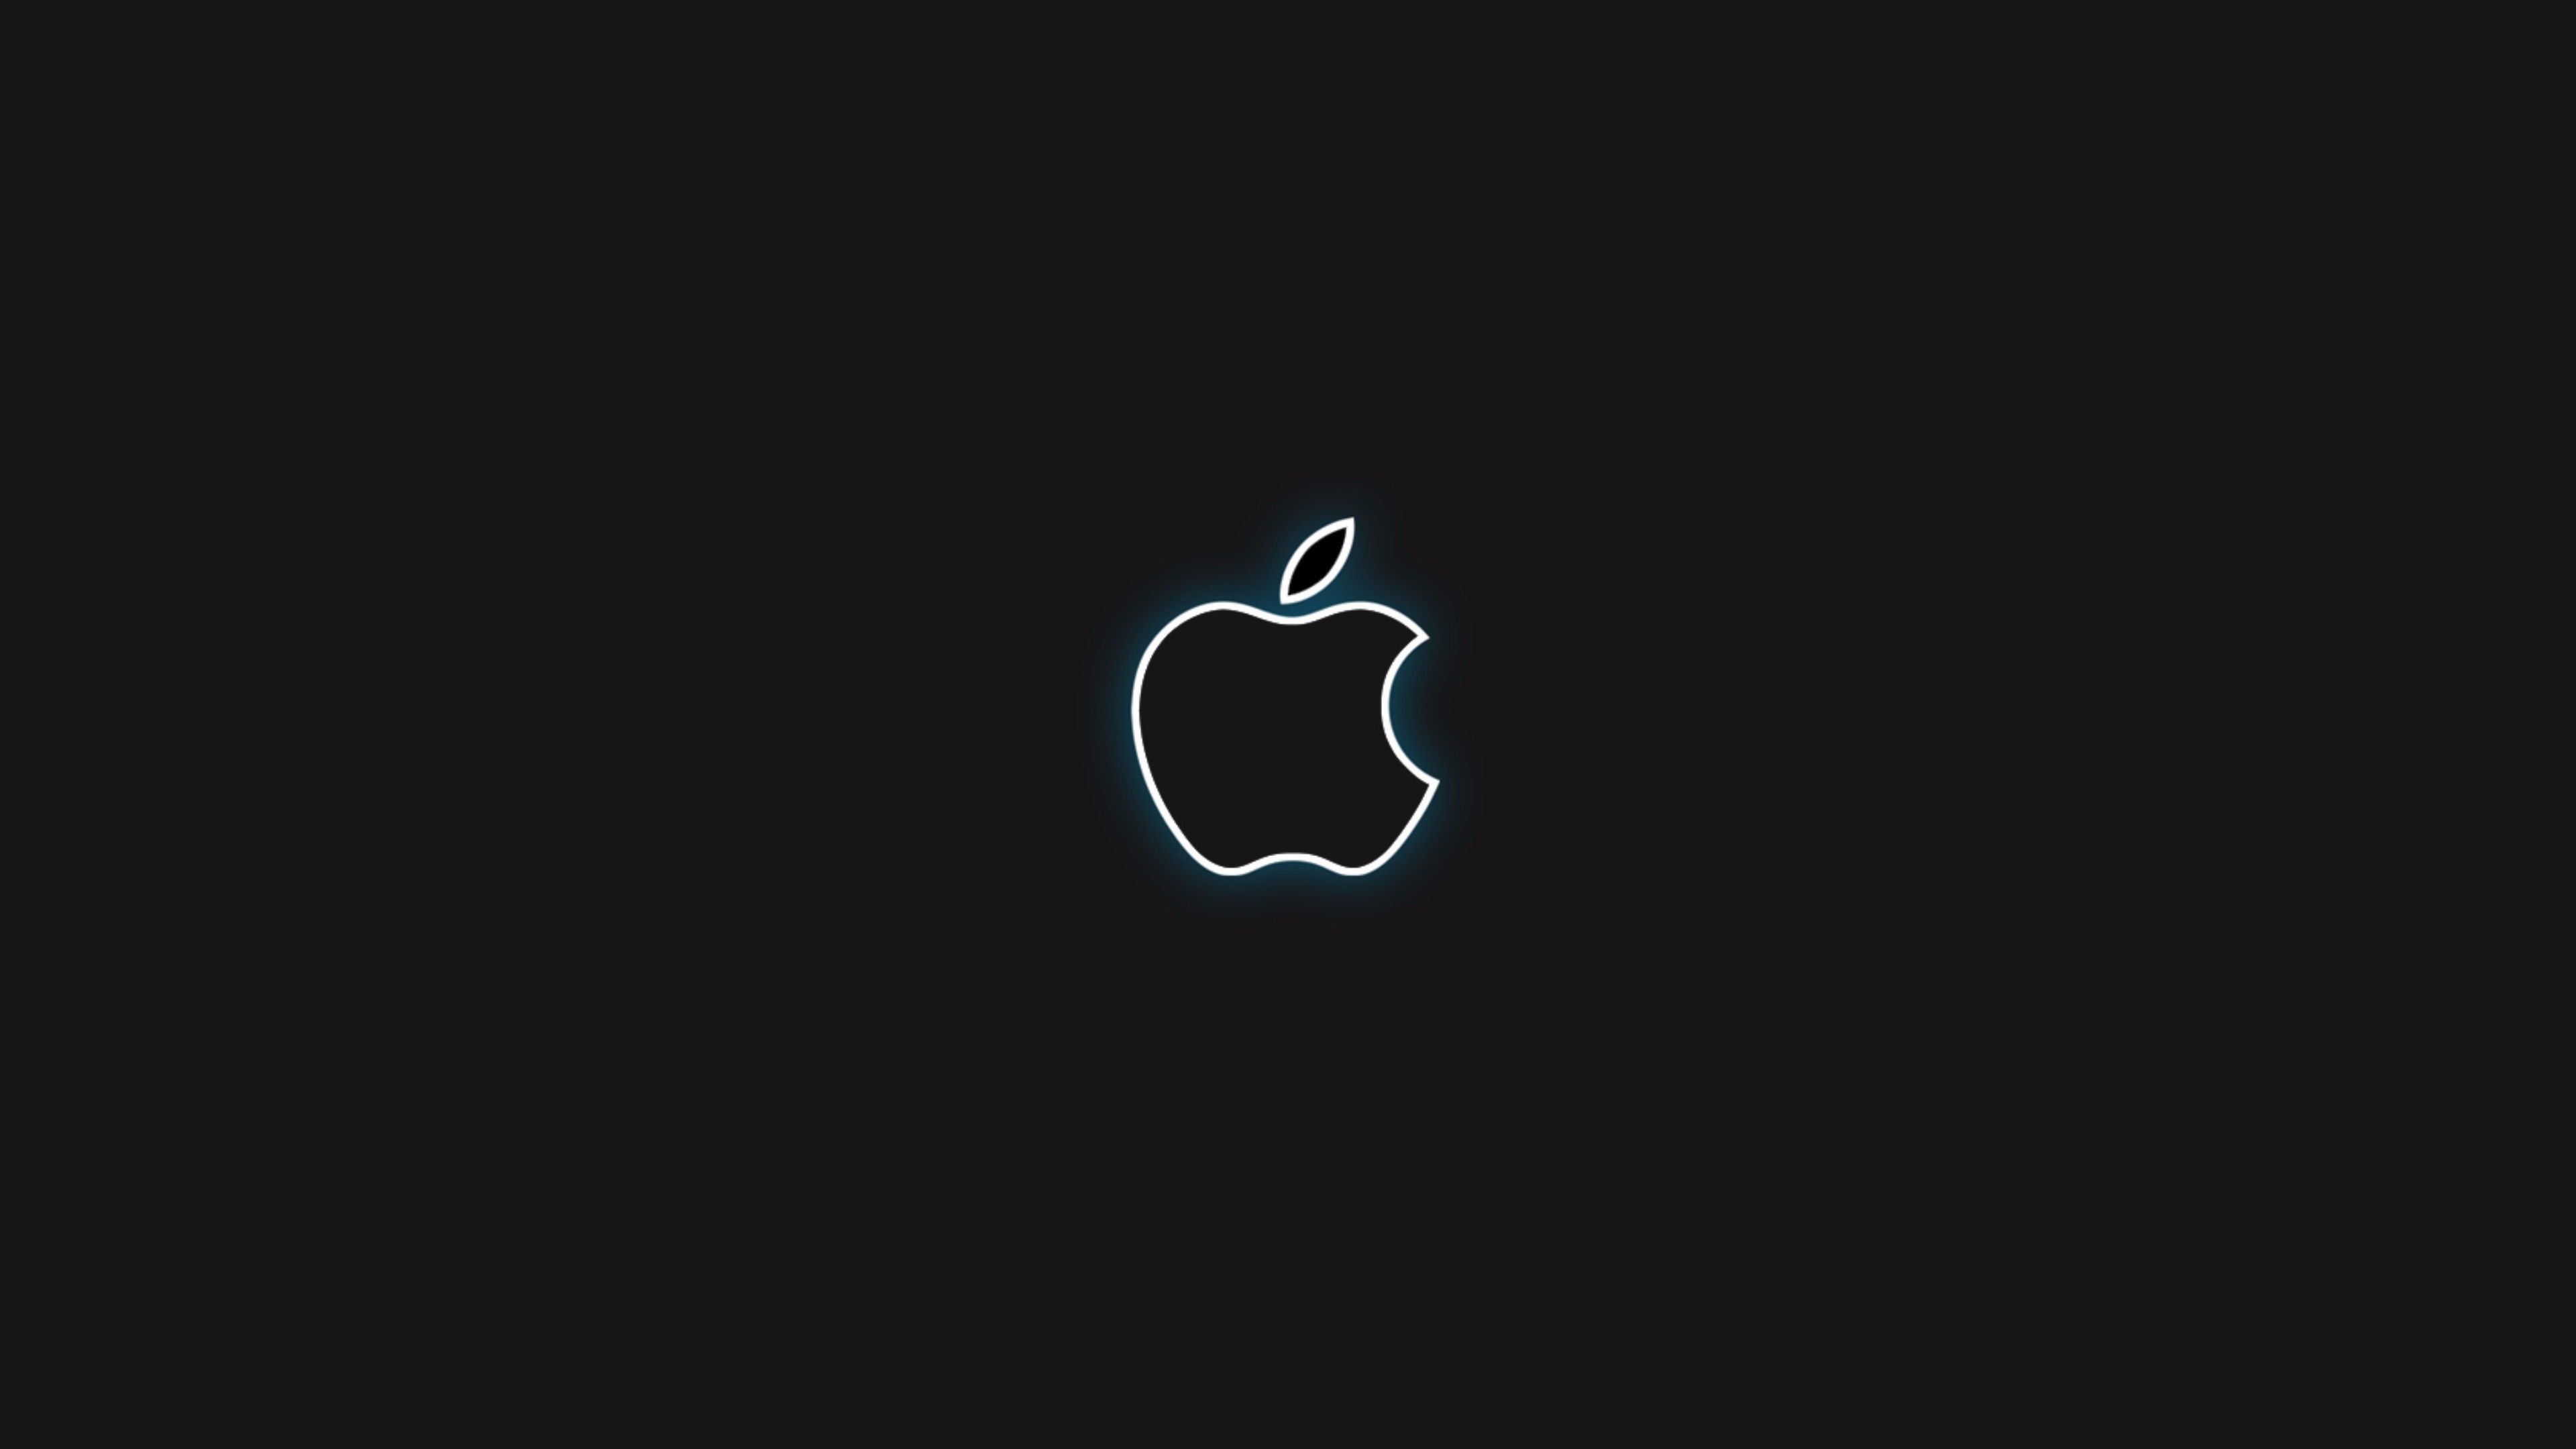 Black Wallpaper 4k. Black apple wallpaper, Apple logo wallpaper, Black apple logo